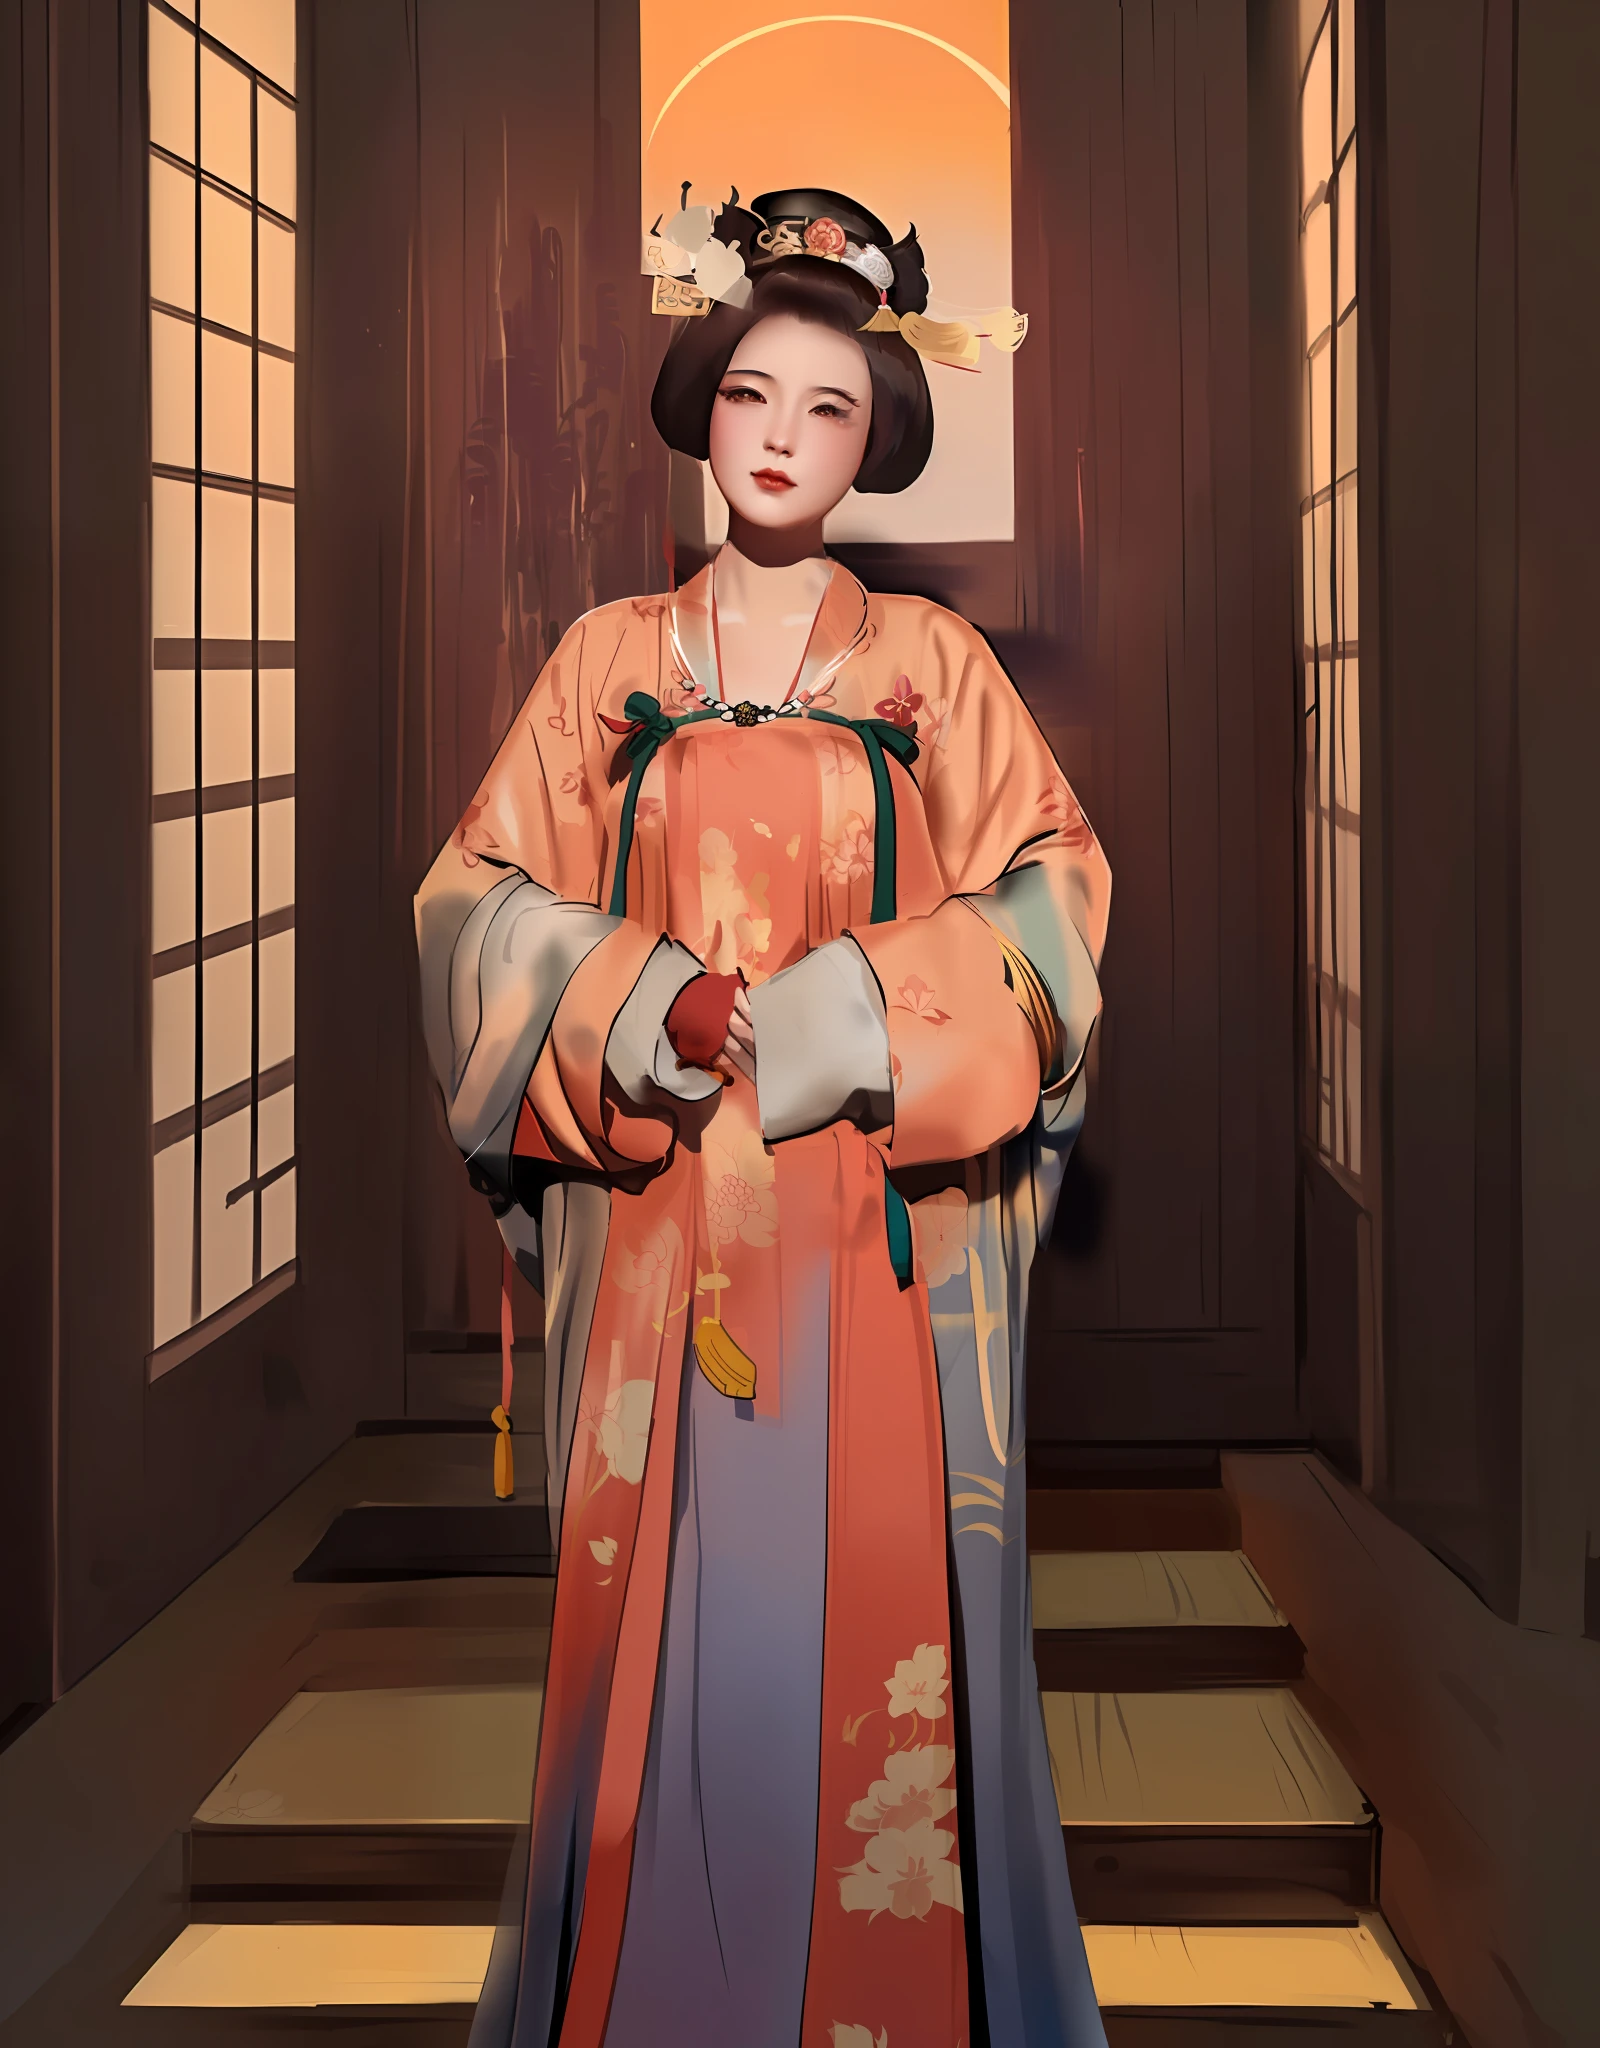 Mujer arafed con un vestido de kimono y un sombrero posando para una foto., inspirado en Uemura Shōen, palacio ， Una chica en Hanfu, obra de arte al estilo de guweiz, emperatriz china, inspired by Wang Meng, inspirado en Min Zhen, inspirado en Yun Du-seo, inspirado por Yun Shouping, inspirado en Lan Ying